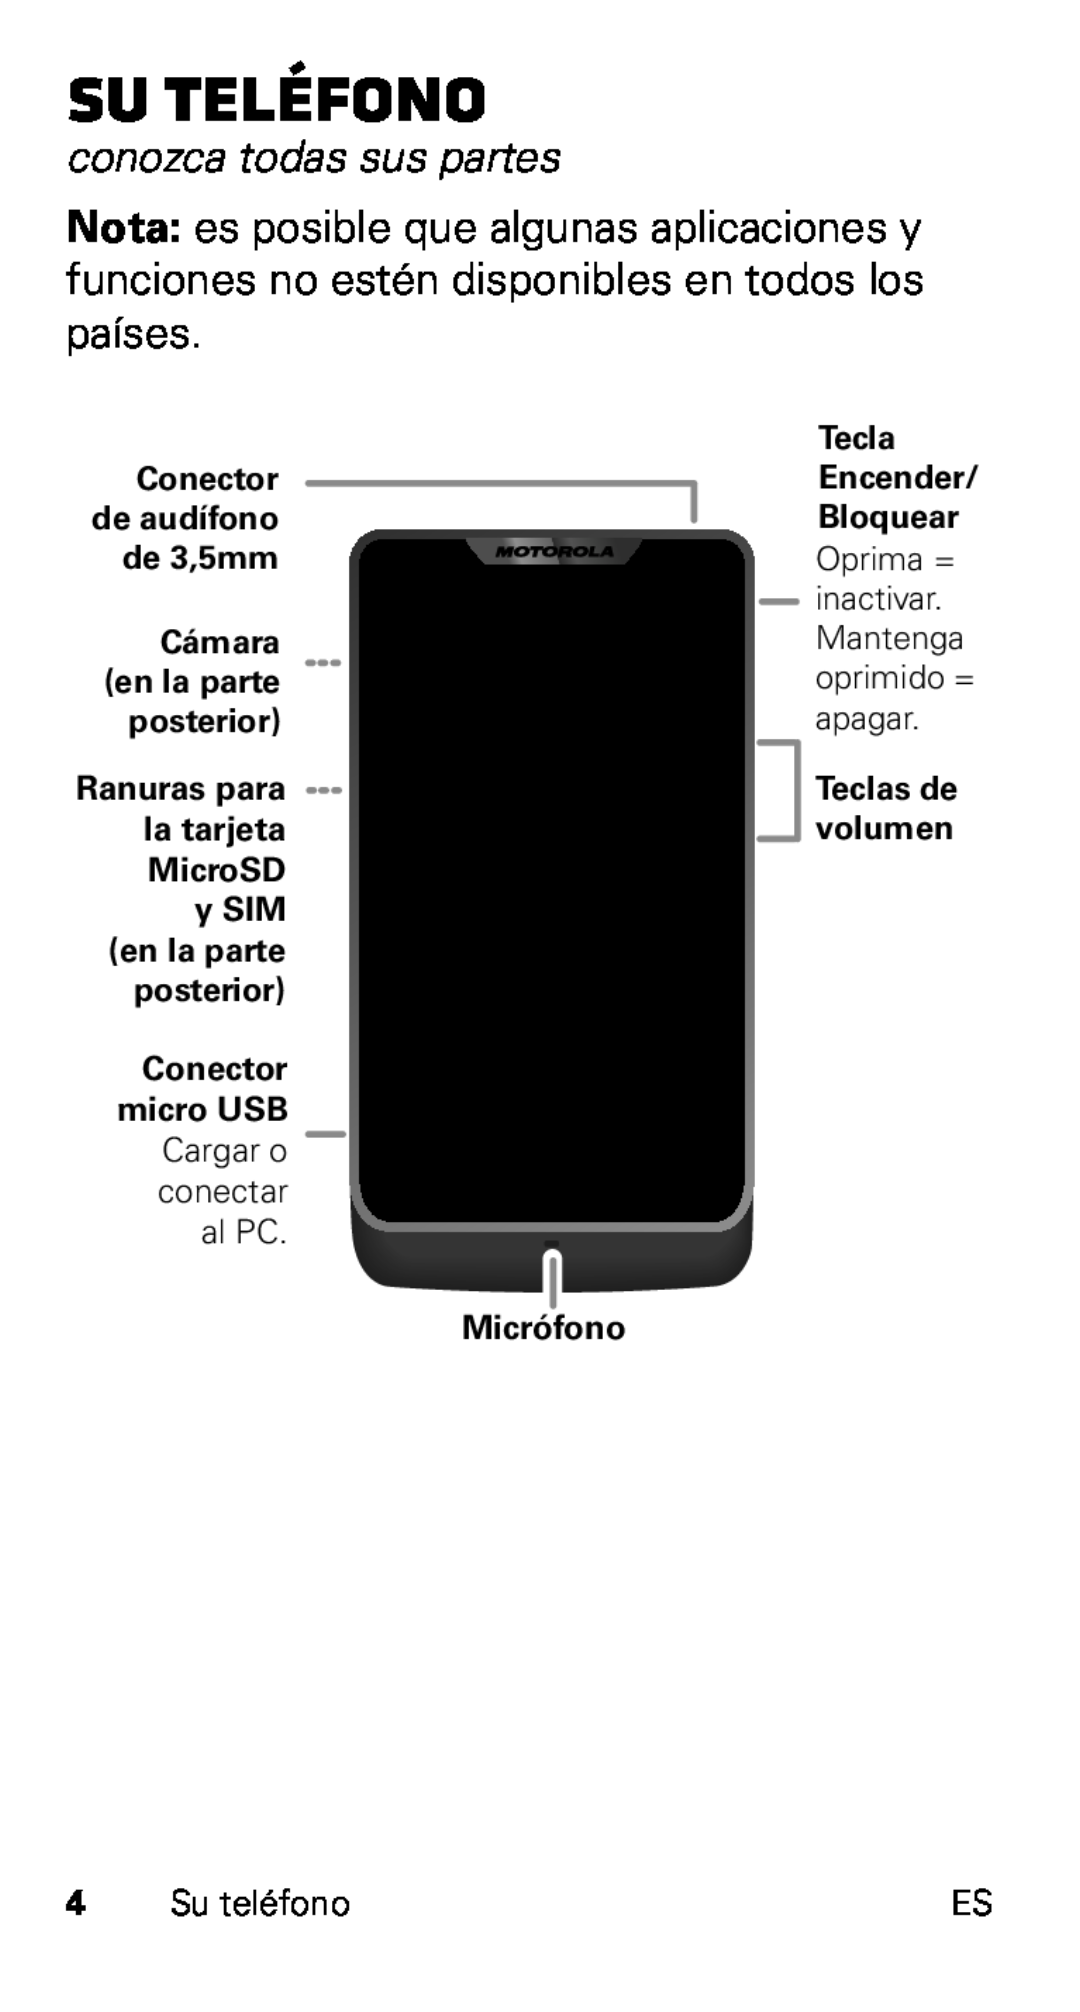 Motorola XT915 Su teléfono, conozca todas sus partes, Cámara en la parte posterior Ranuras para la tarjeta MicroSD y SIM 